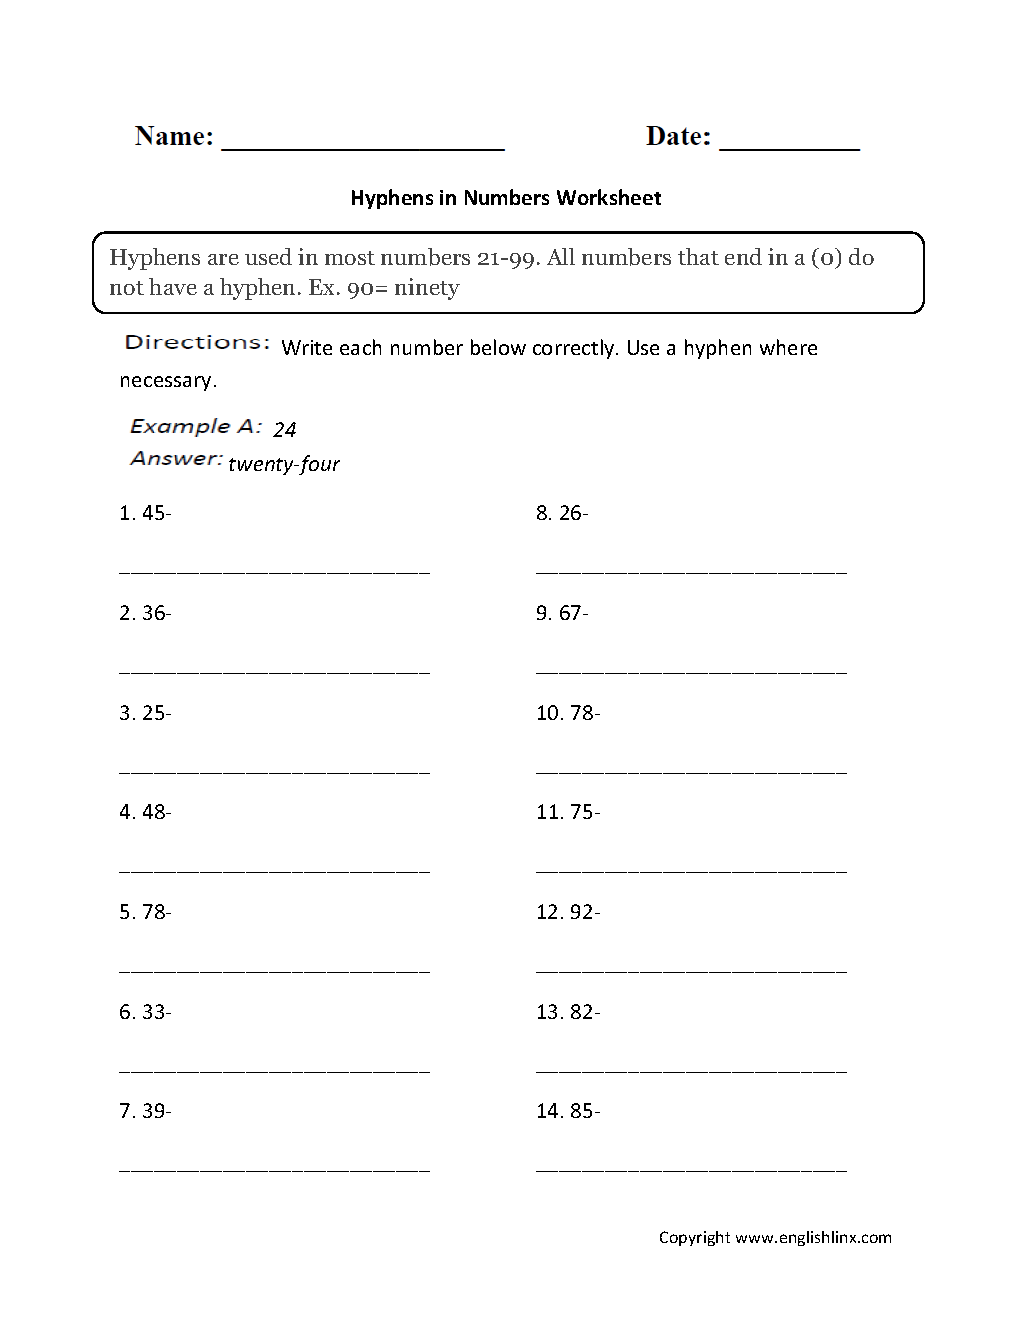 Hyphens in Numbers Worksheets